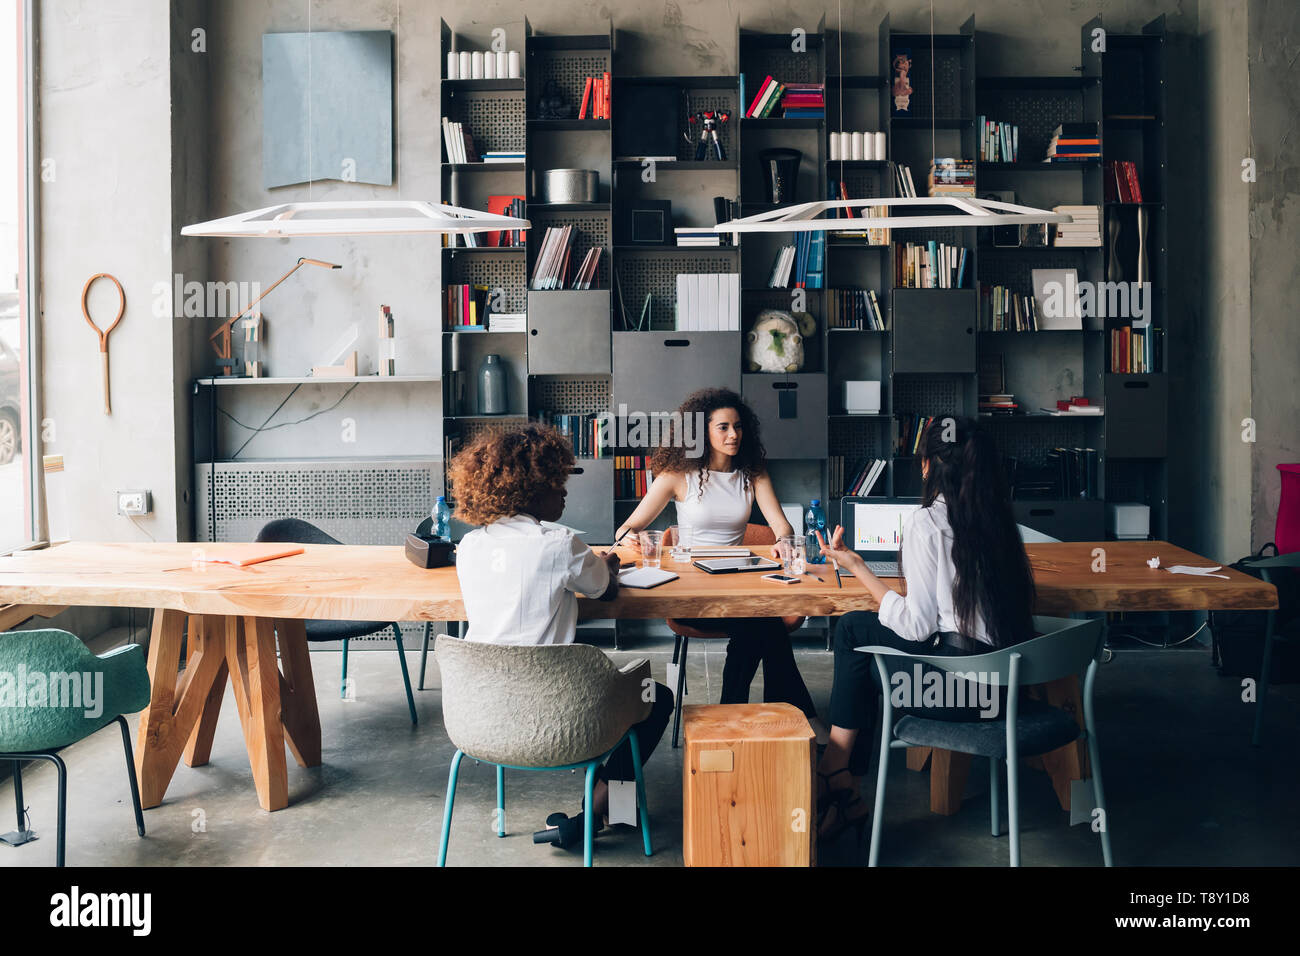 Mujeres jóvenes que tienen reunión en una oficina moderna - ingeniosos, creatividad, interacción Foto de stock